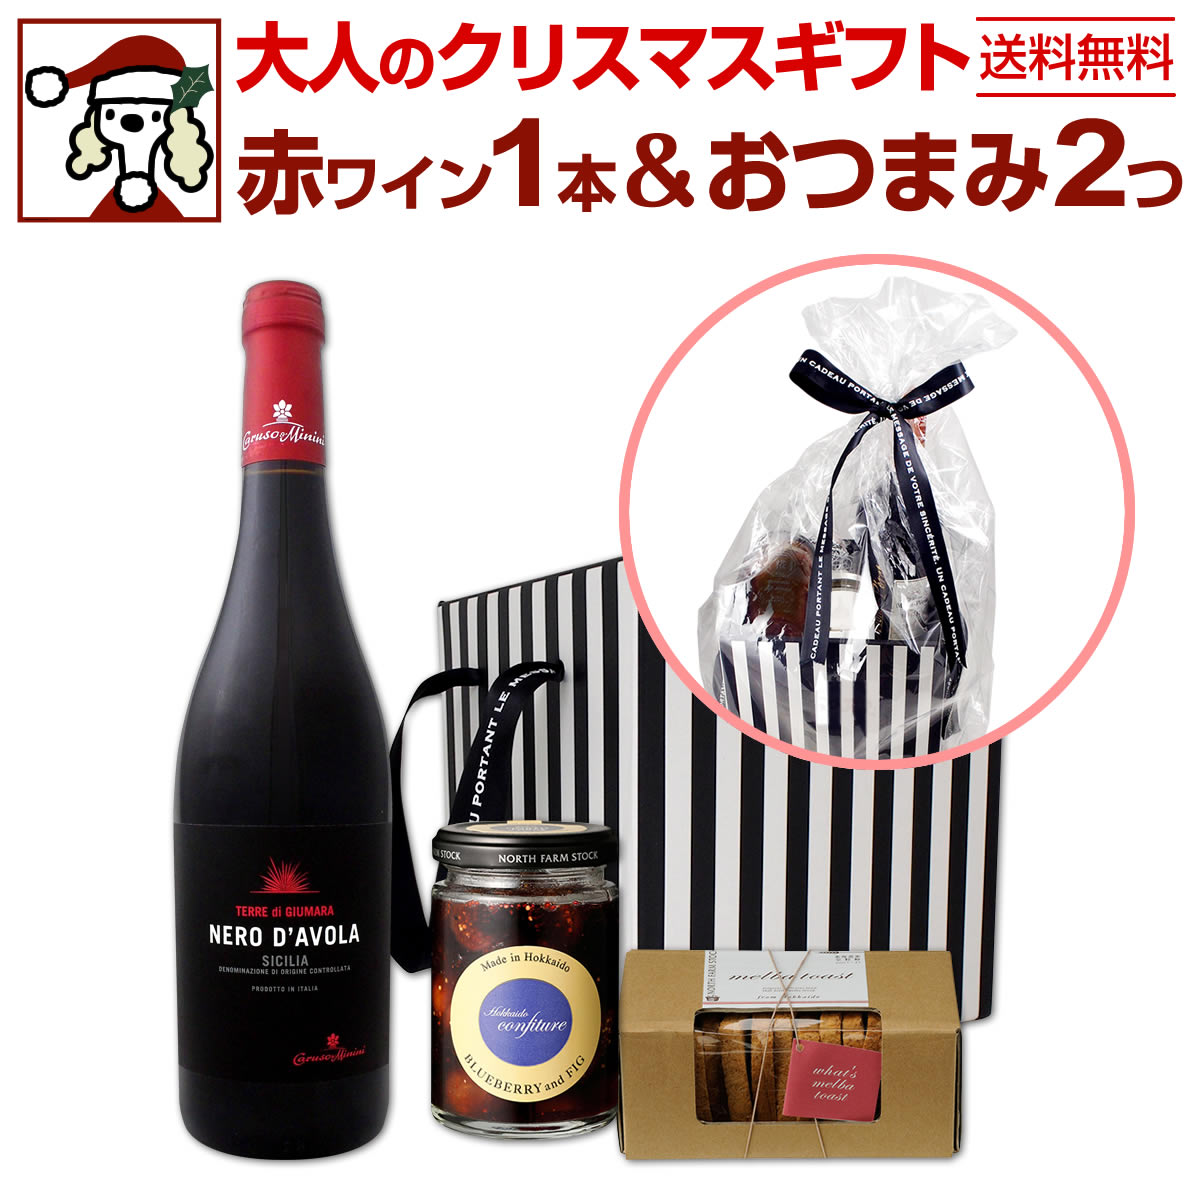 【送料無料】大人のクリスマスギフト 赤ワインセット